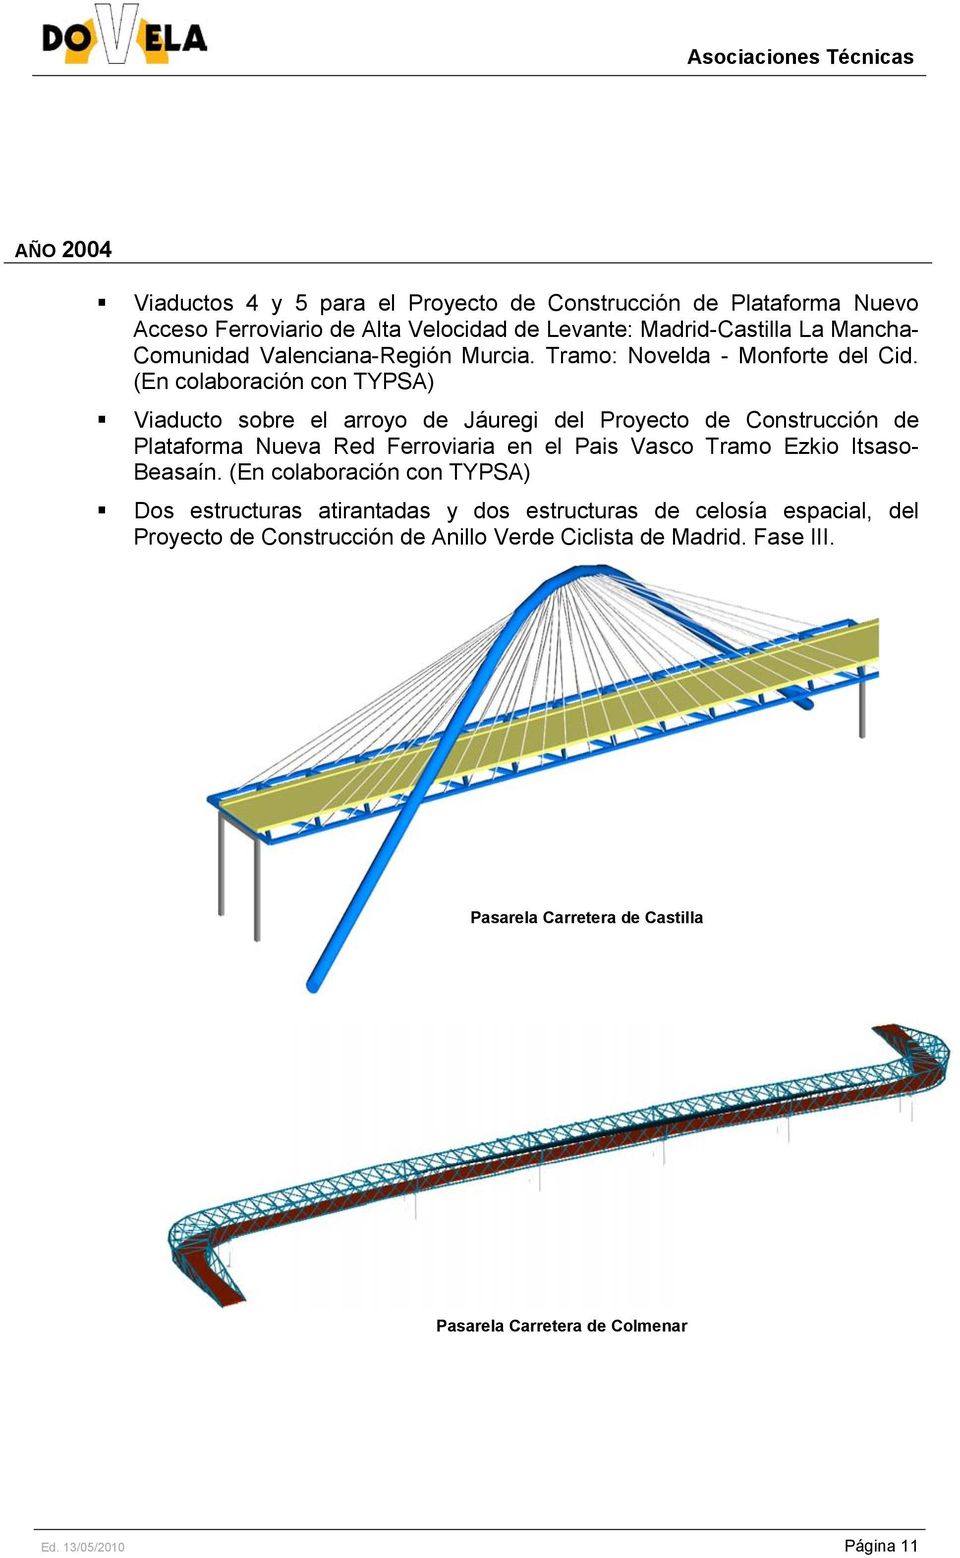 (En colaboración con TYPSA) Viaducto sobre el arroyo de Jáuregi del Proyecto de Construcción de Plataforma Nueva Red Ferroviaria en el Pais Vasco Tramo Ezkio